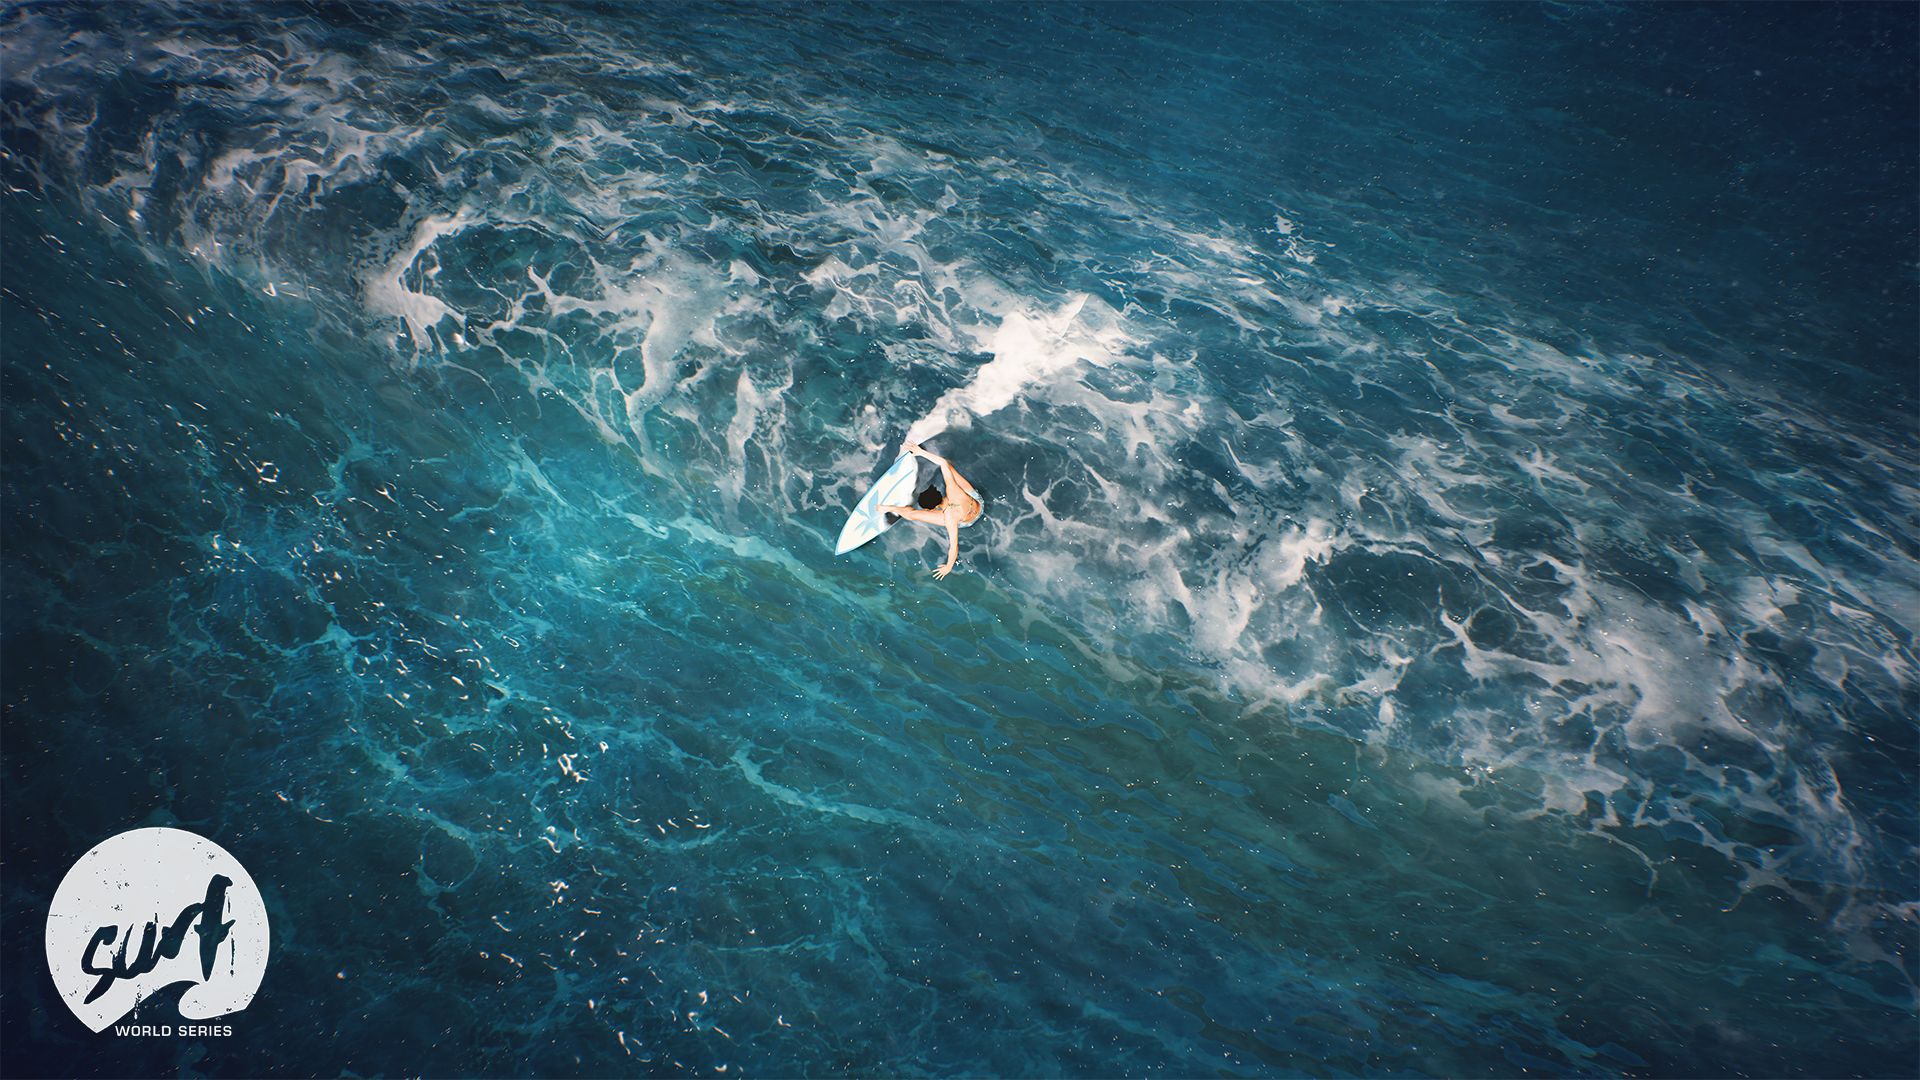 Surf World Series le nouveau jeu vidéo de surf